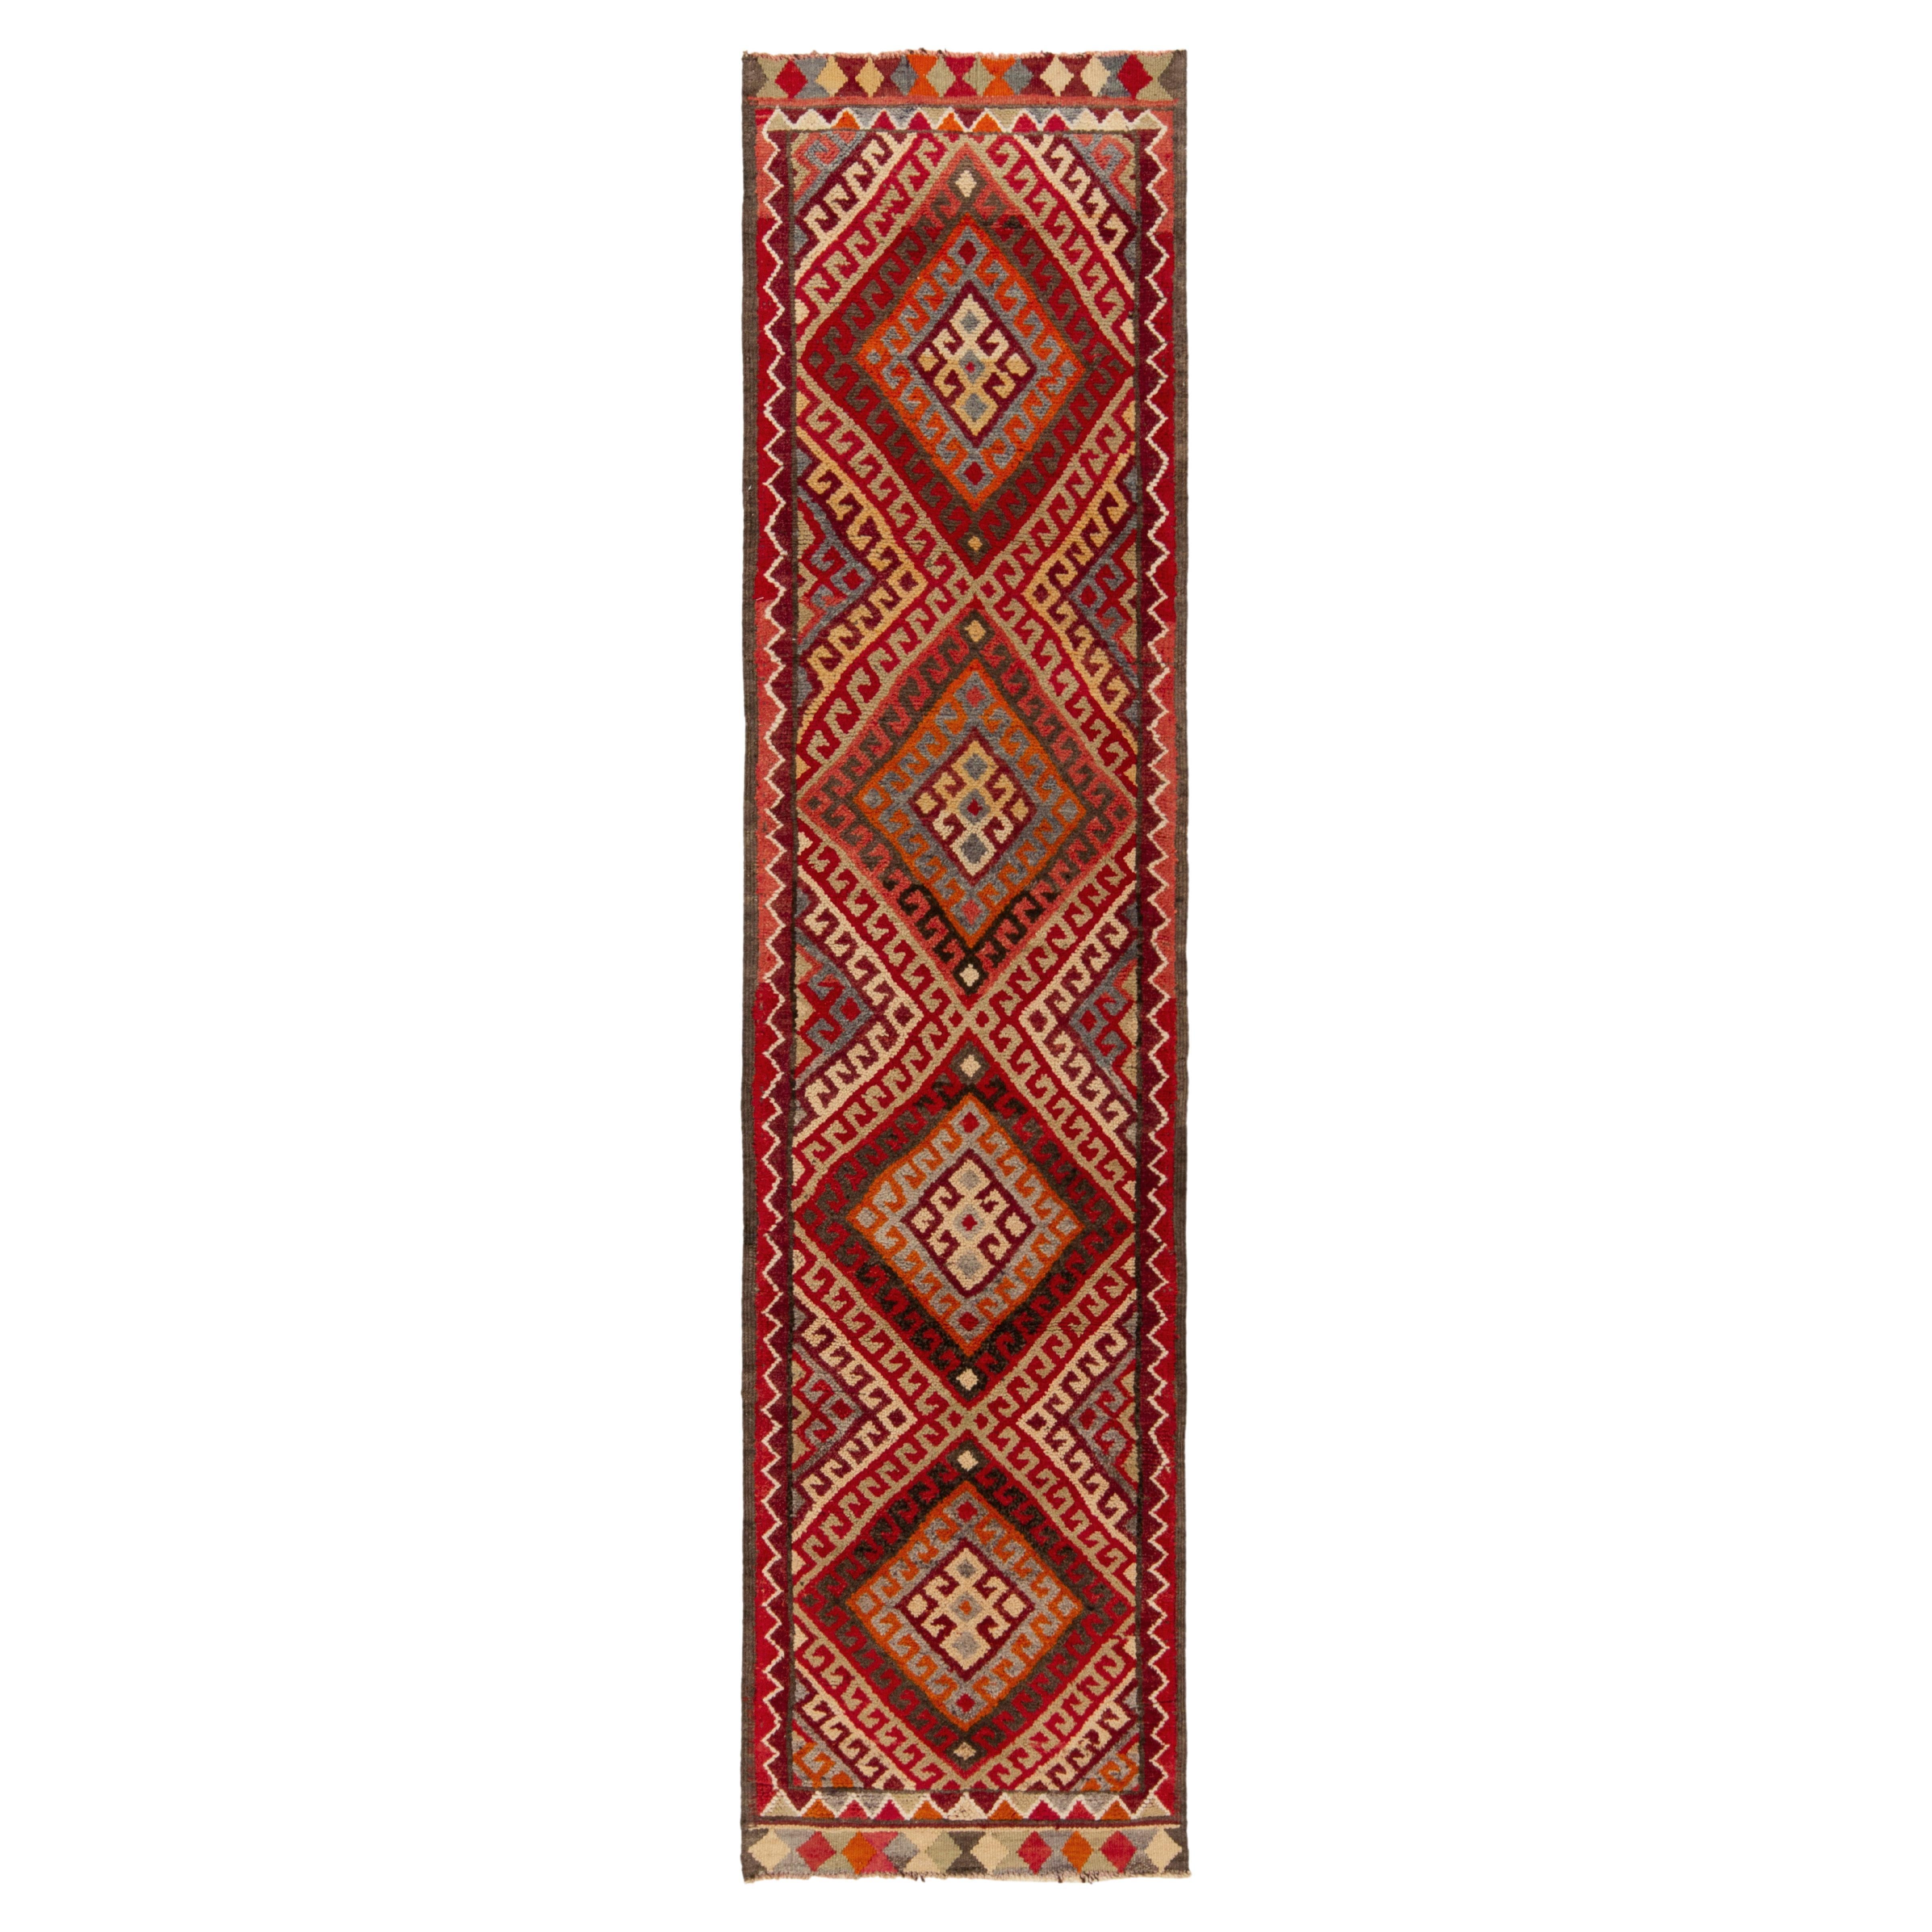 1950s Vintage Tribal Runner in Red Orange Brown Geometric Pattern by Rug & Kilim For Sale